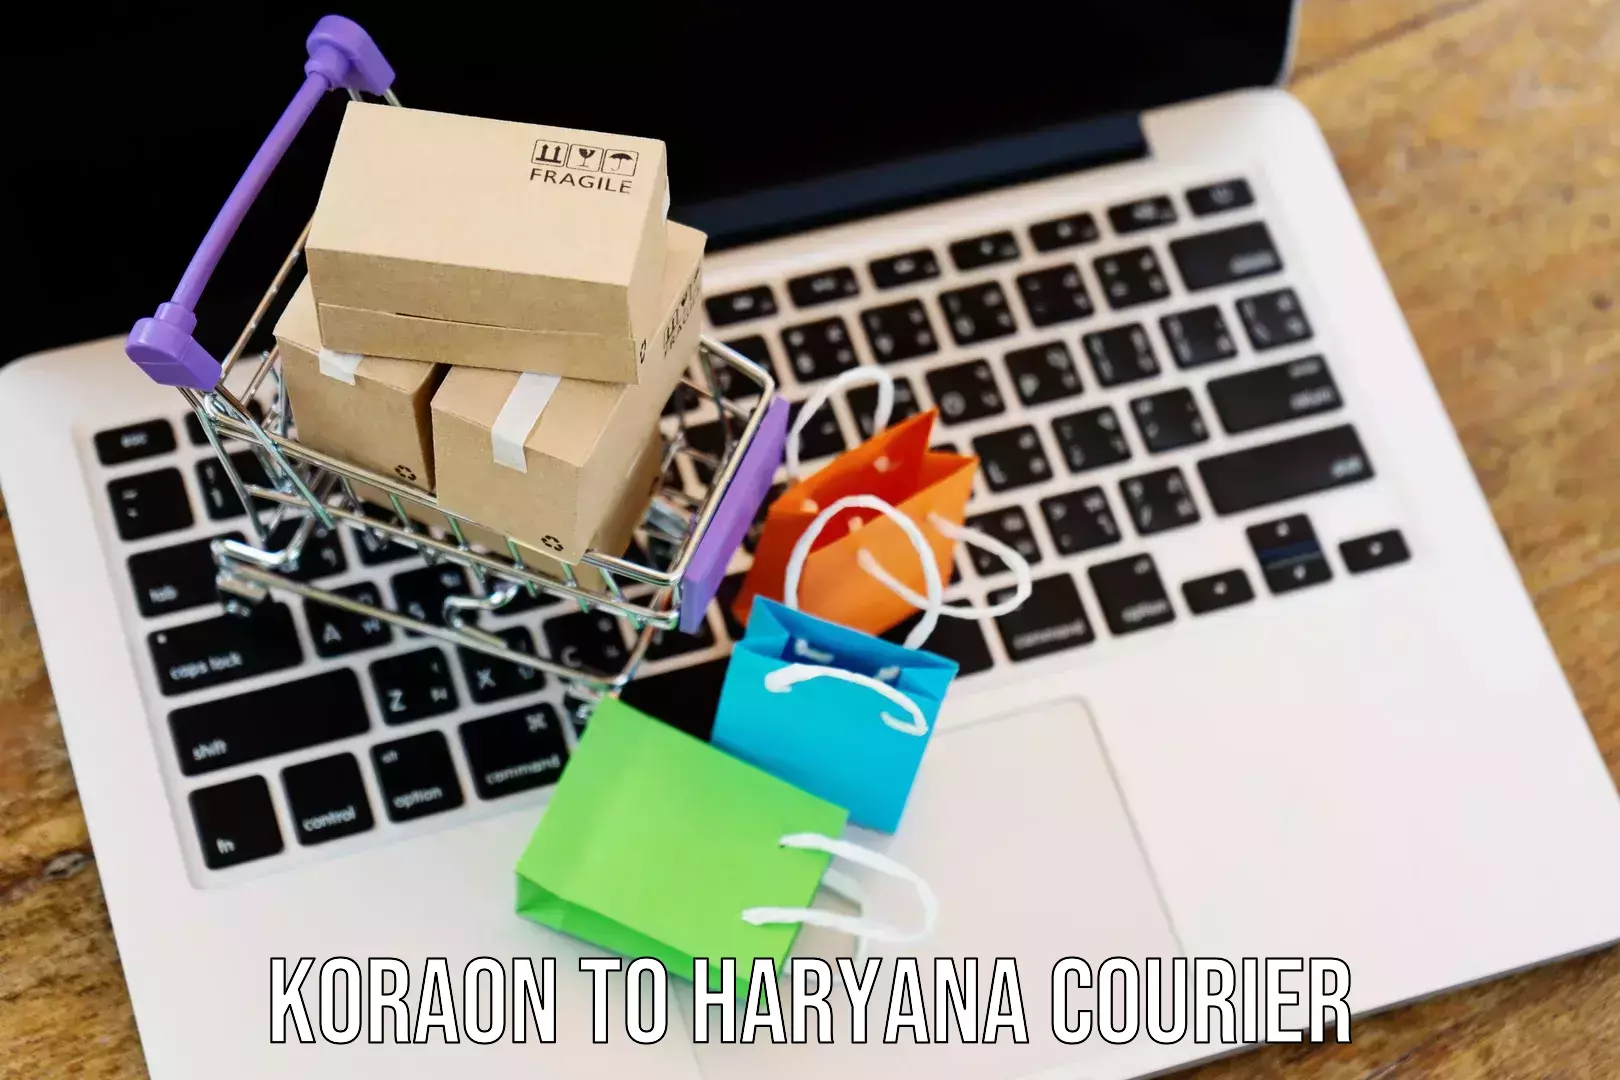 24/7 courier service Koraon to Haryana